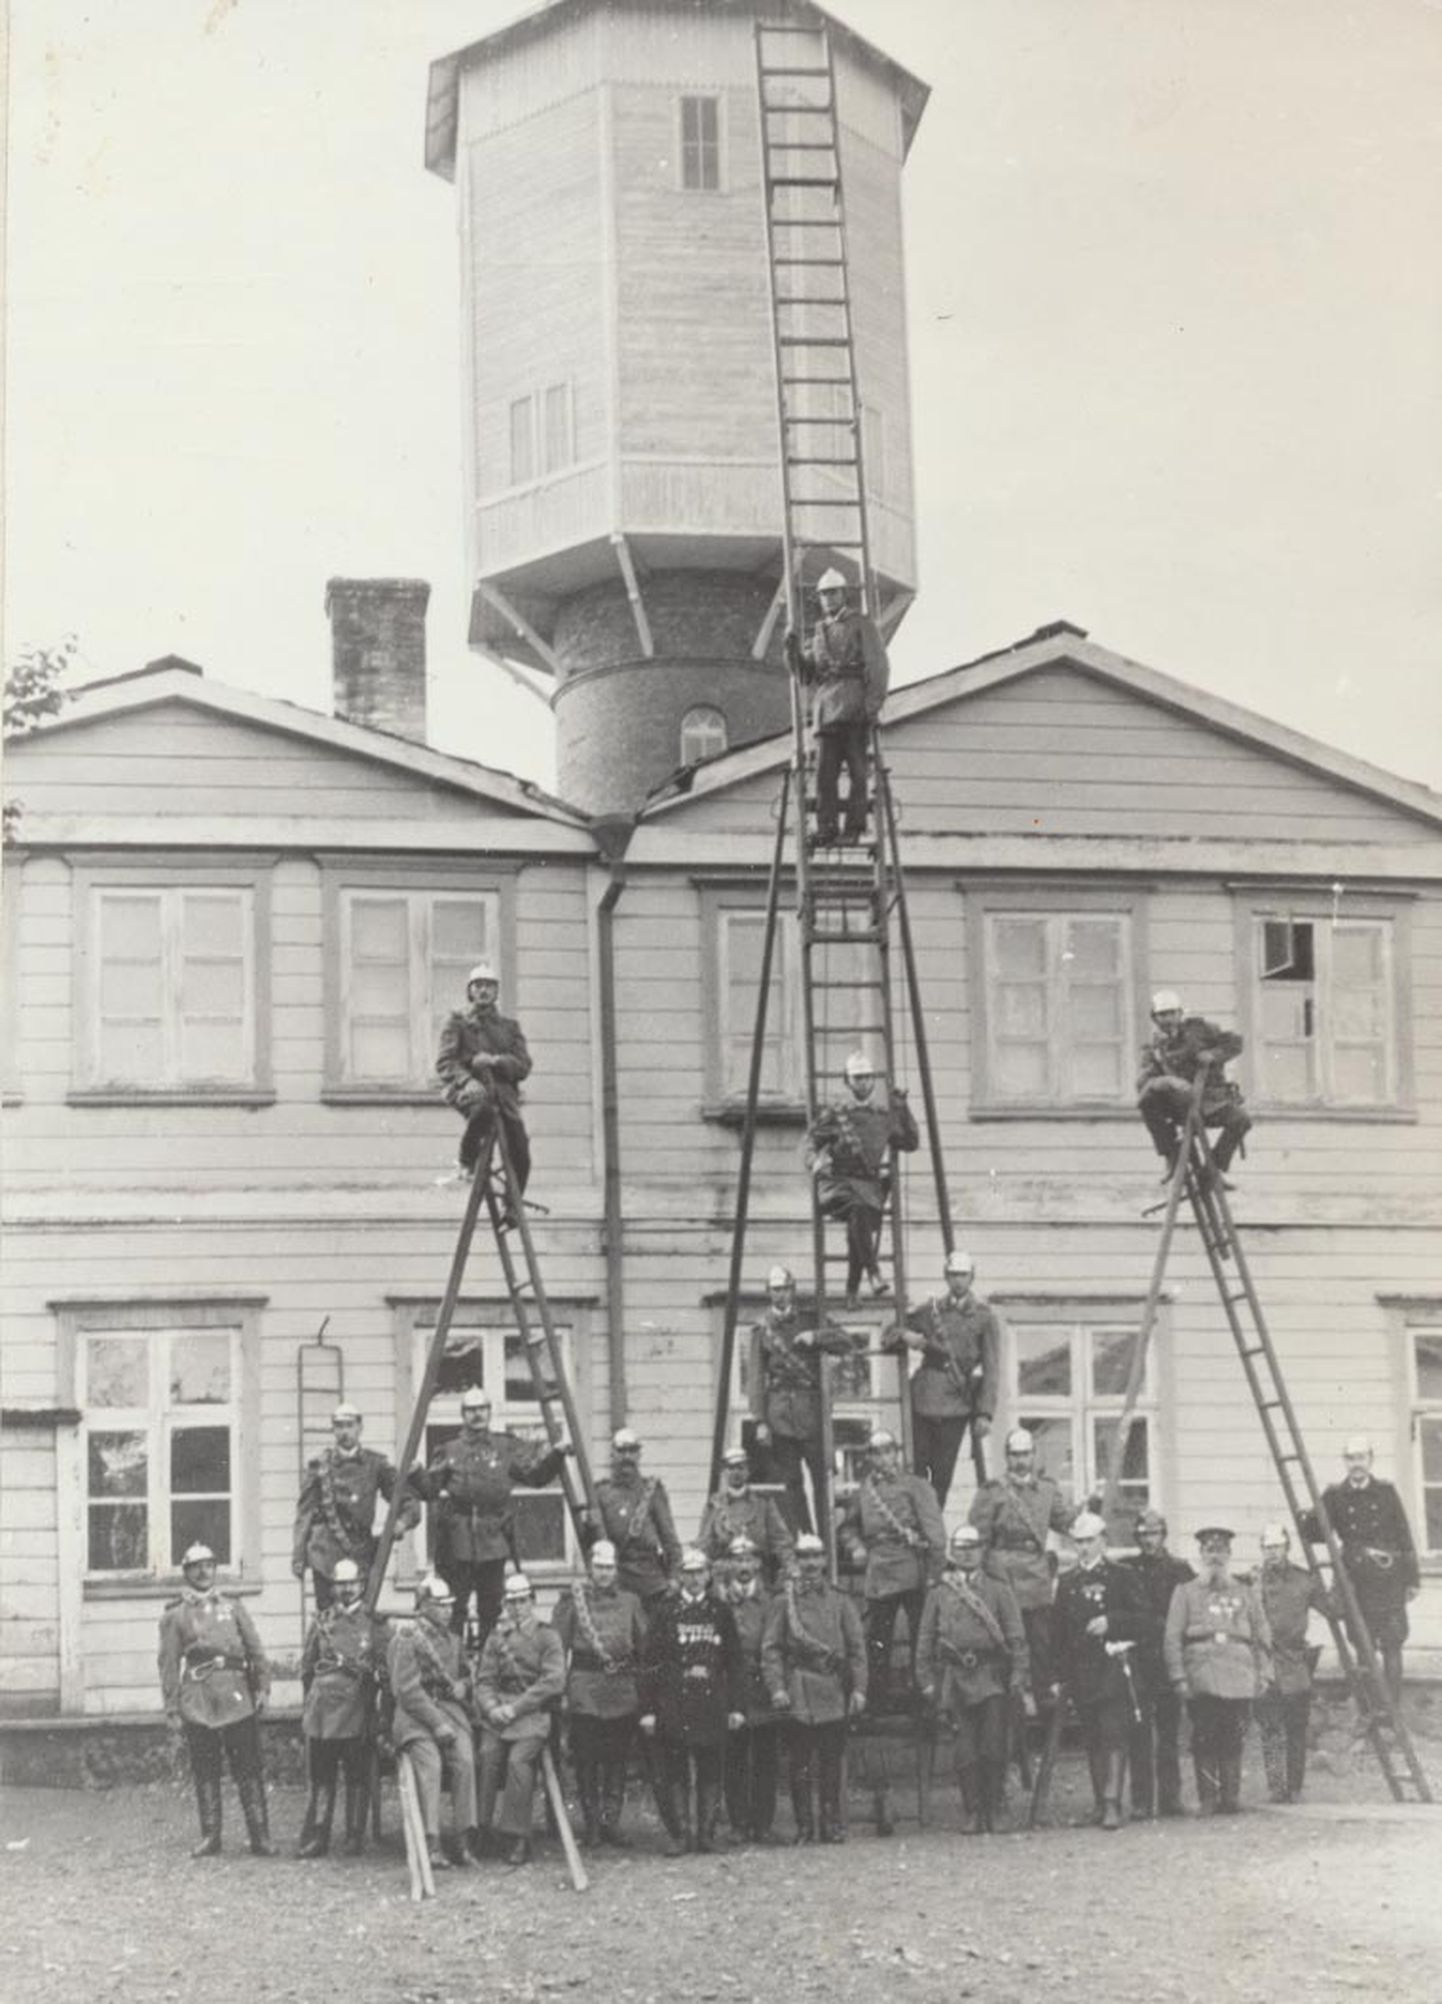 Viljandimaa vabatahtlike tuletõrjujate komando möödunud sajandi 20. aastate keskpaigas.